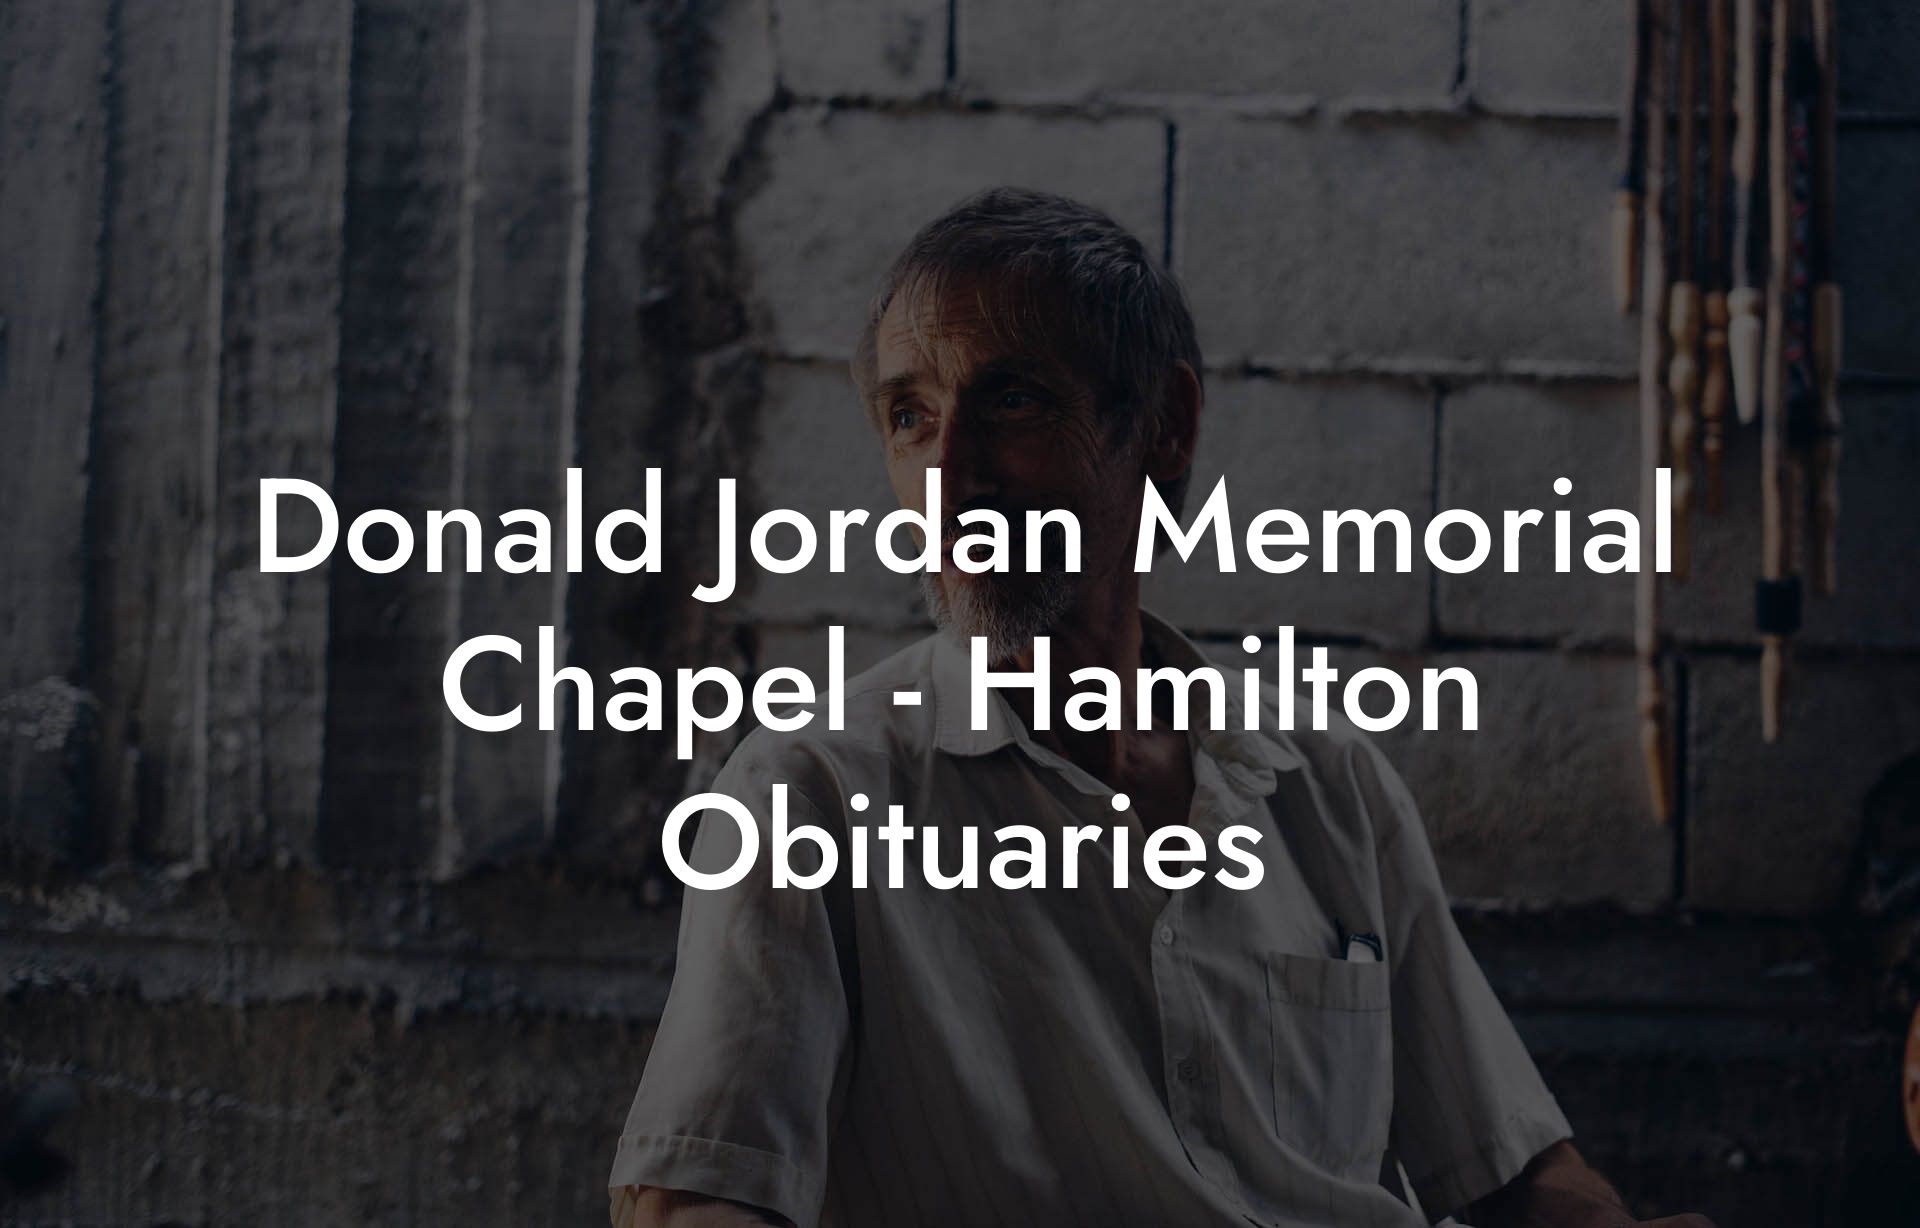 Donald Jordan Memorial Chapel - Hamilton Obituaries